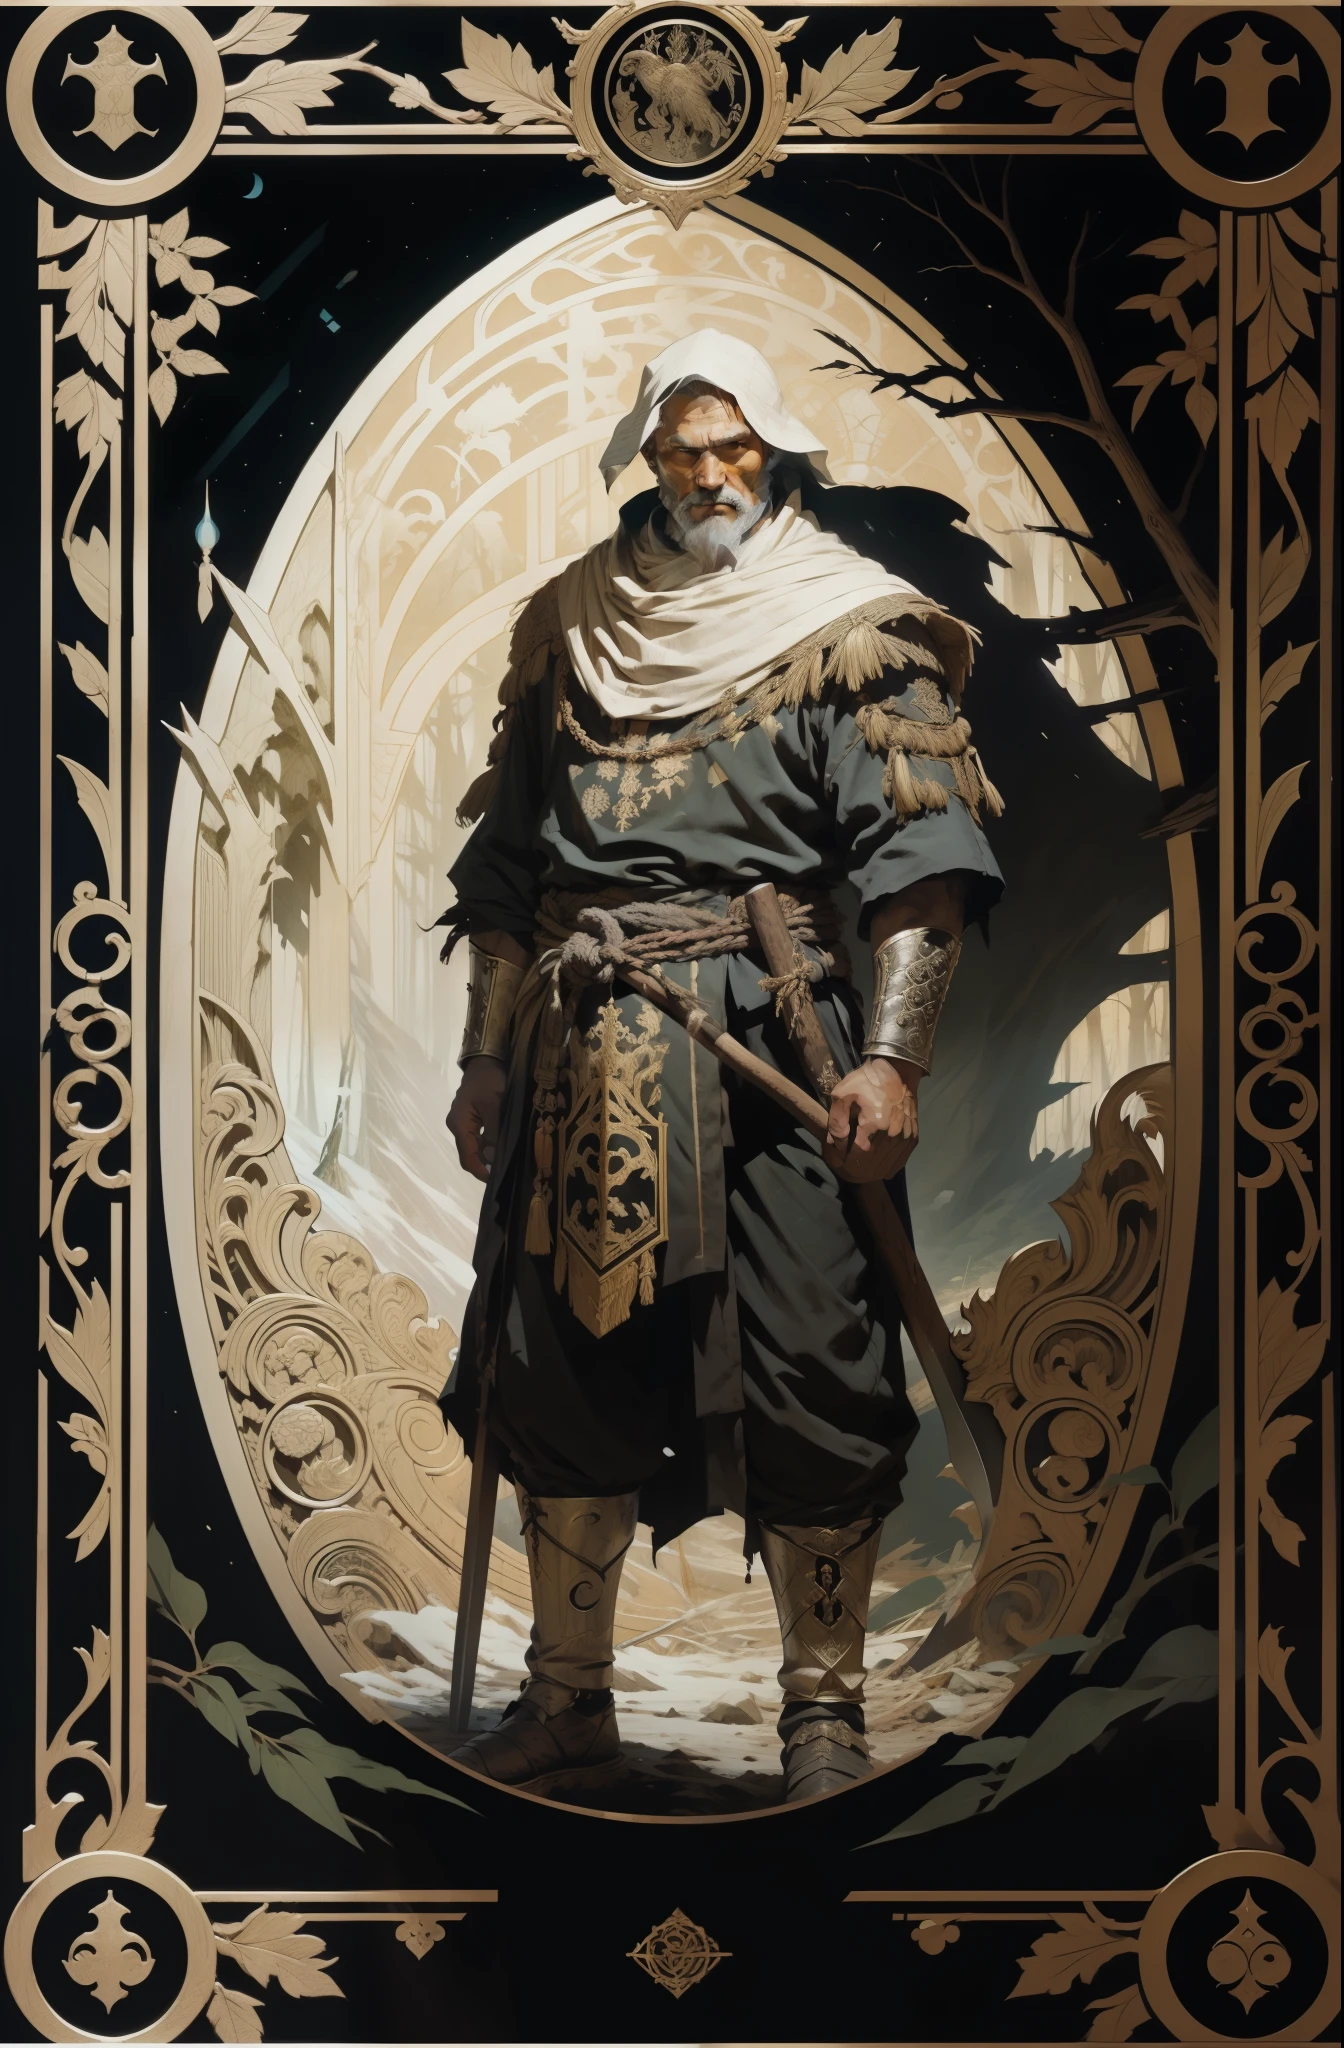 男人, 穿著北方民族的傳統服裝, 手裡拿著斧子, 黑暗森林背景, 塔羅牌風格, 中世紀圖案框架